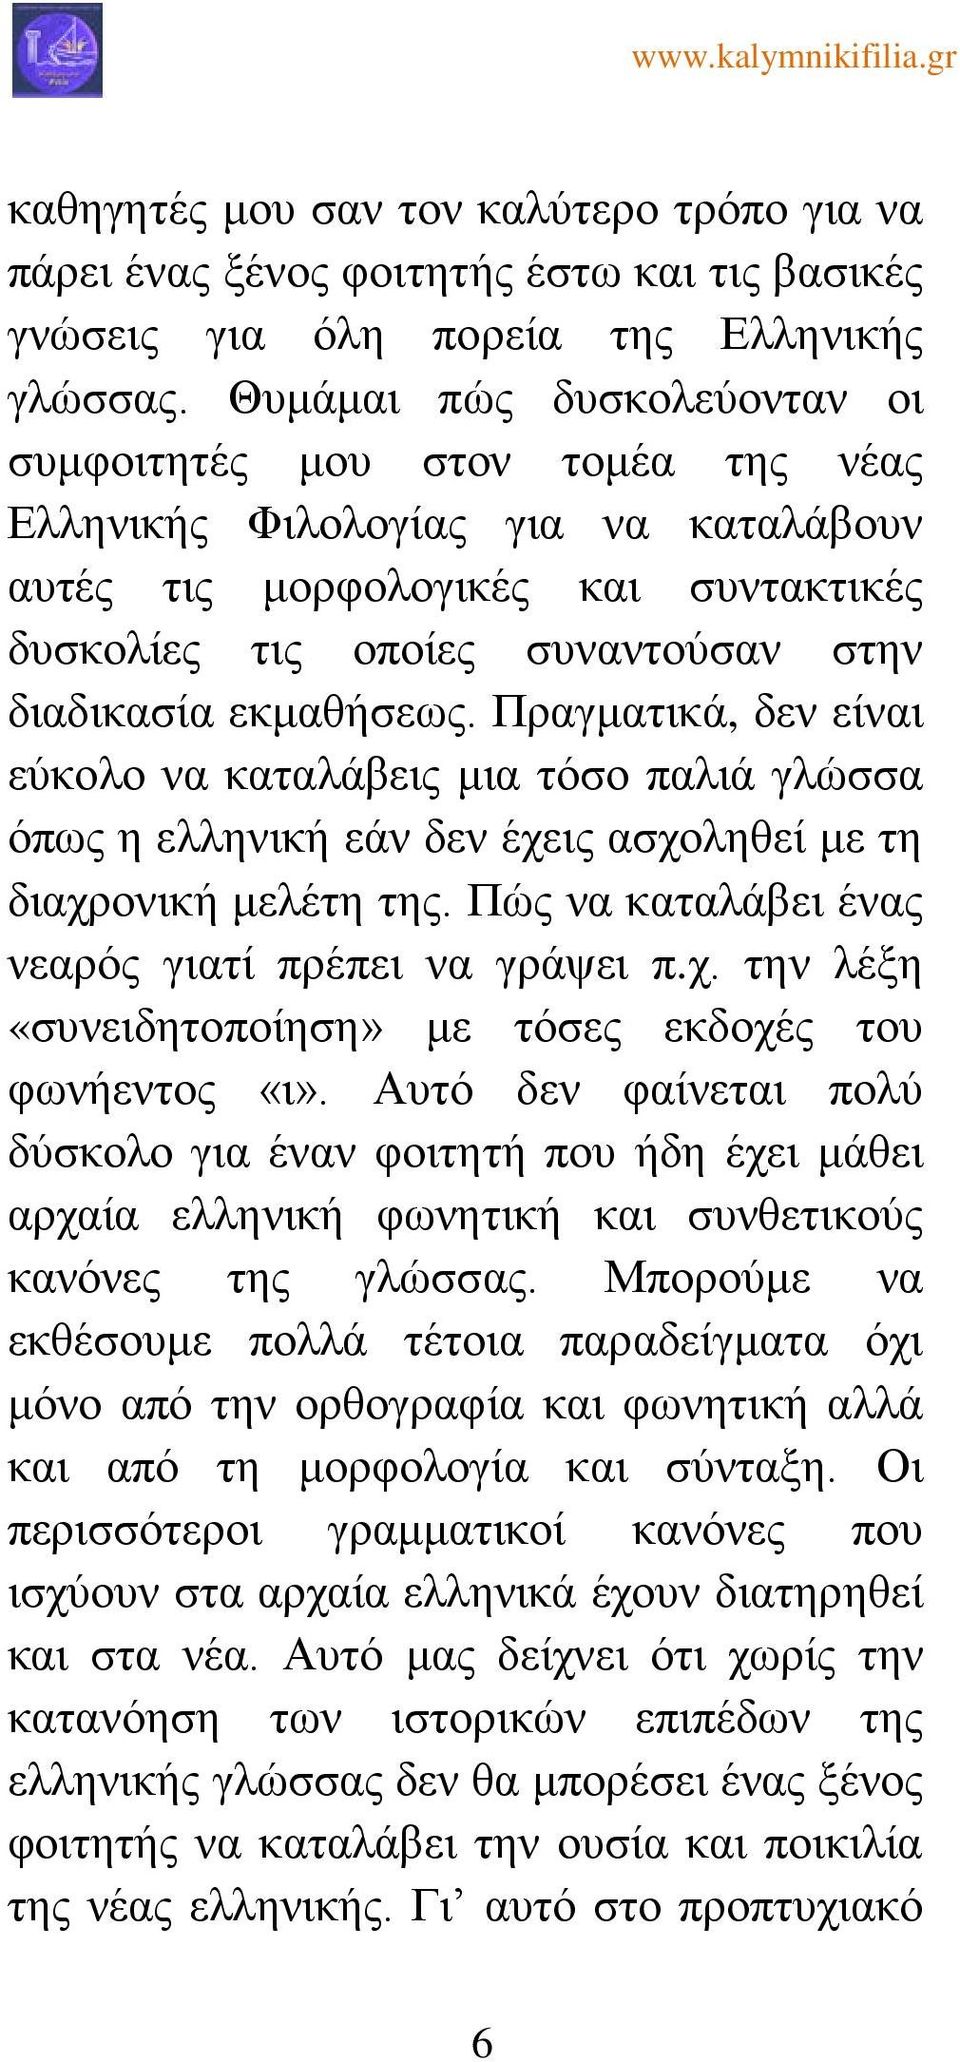 εκμαθήσεως. Πραγματικά, δεν είναι εύκολο να καταλάβεις μια τόσο παλιά γλώσσα όπως η ελληνική εάν δεν έχεις ασχοληθεί με τη διαχρονική μελέτη της. Πώς να καταλάβει ένας νεαρός γιατί πρέπει να γράψει π.